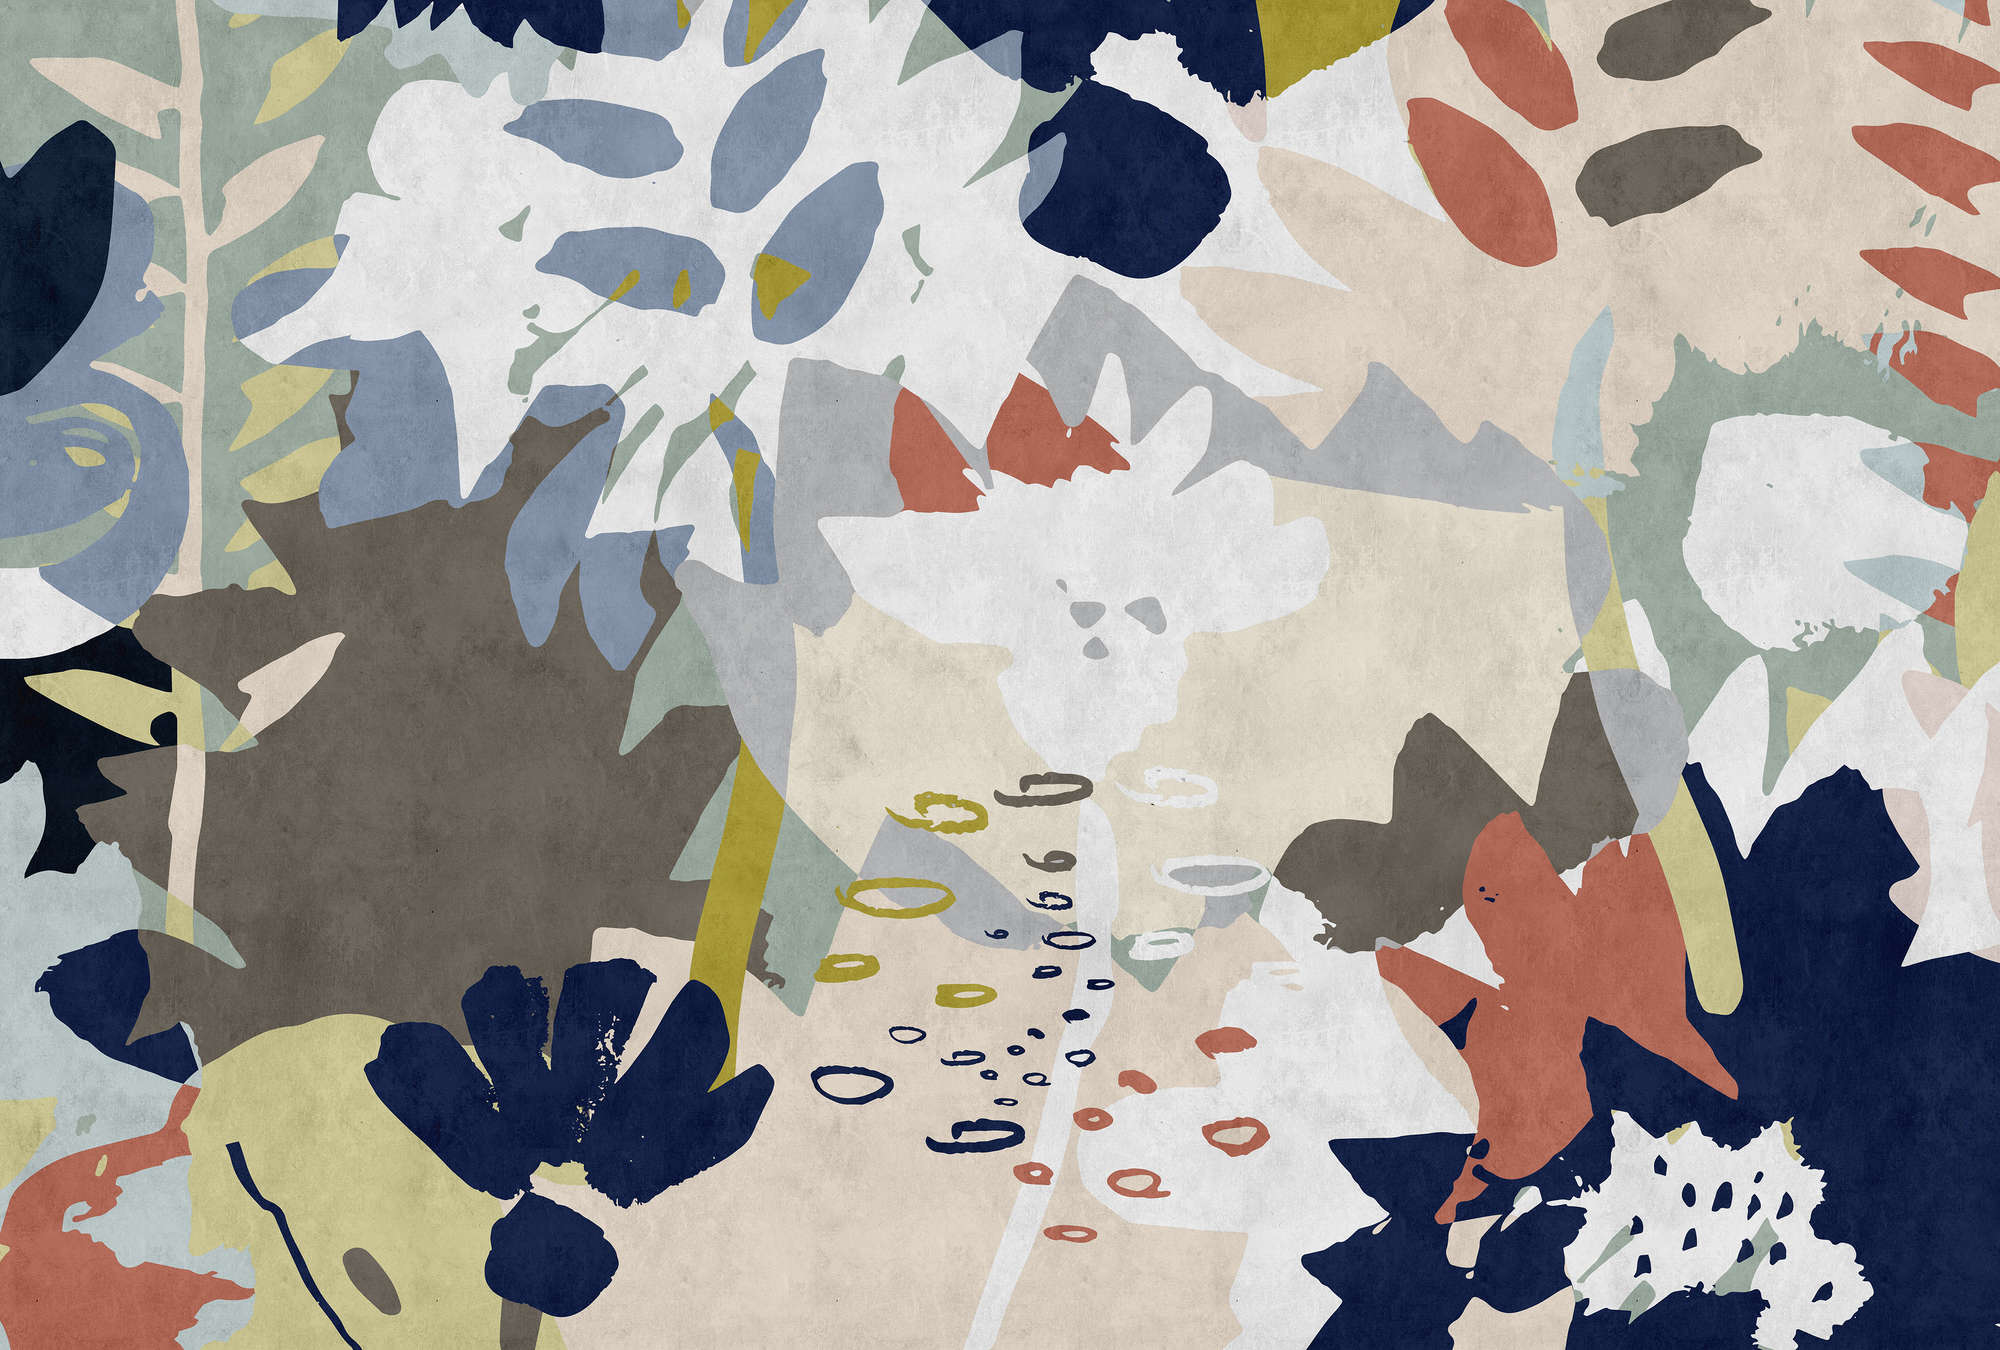             Floral Collage 4 - Fototapete mit buntem Blattmotiv - Löschpapier Struktur – Blau, Braun | Perlmutt Glattvlies
        